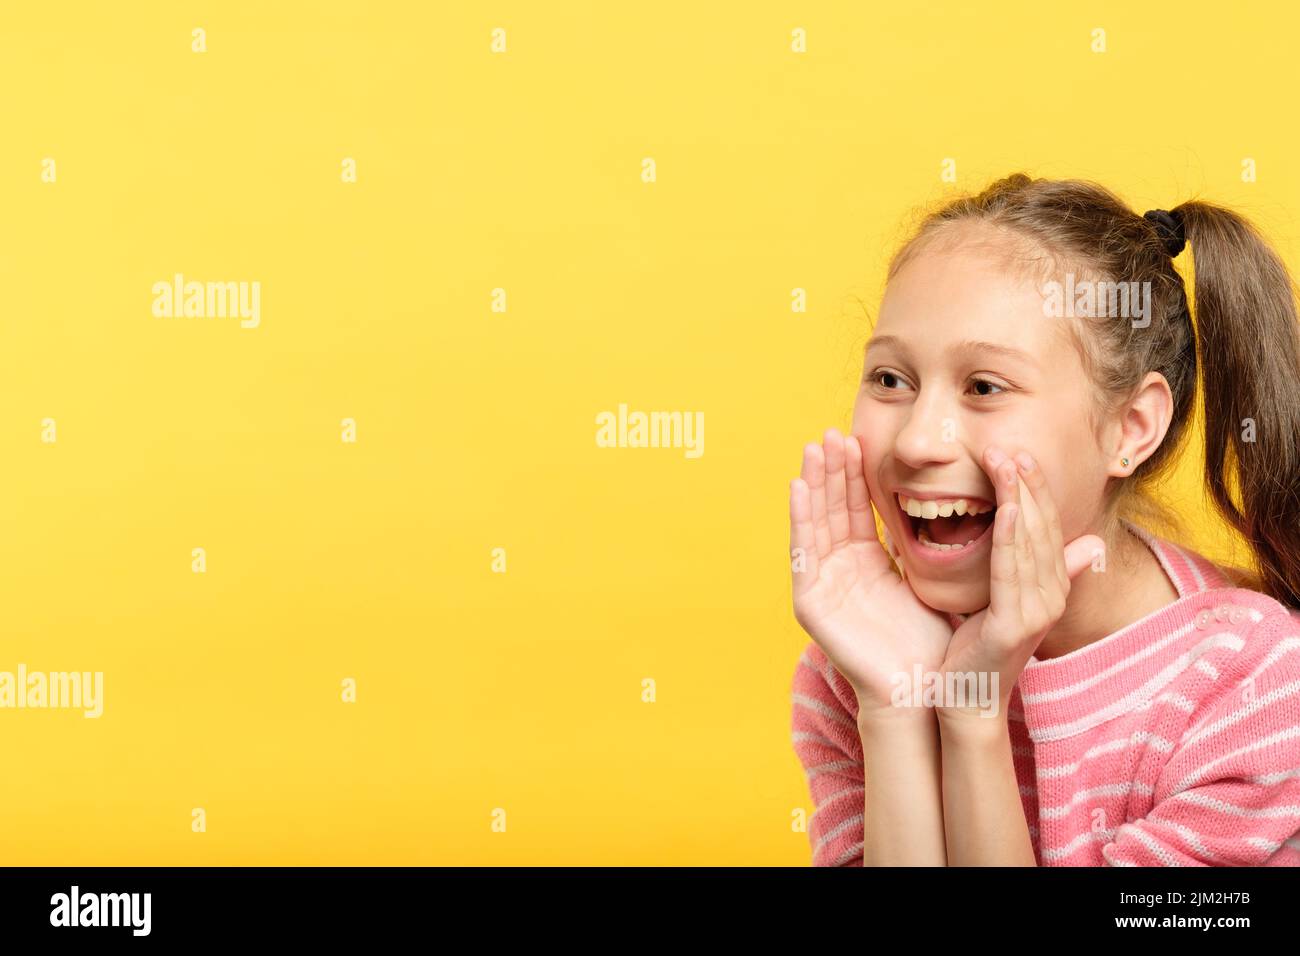 Lächelndes Mädchen reden so, als ob man ein Megaphon ankündigen würde Stockfoto